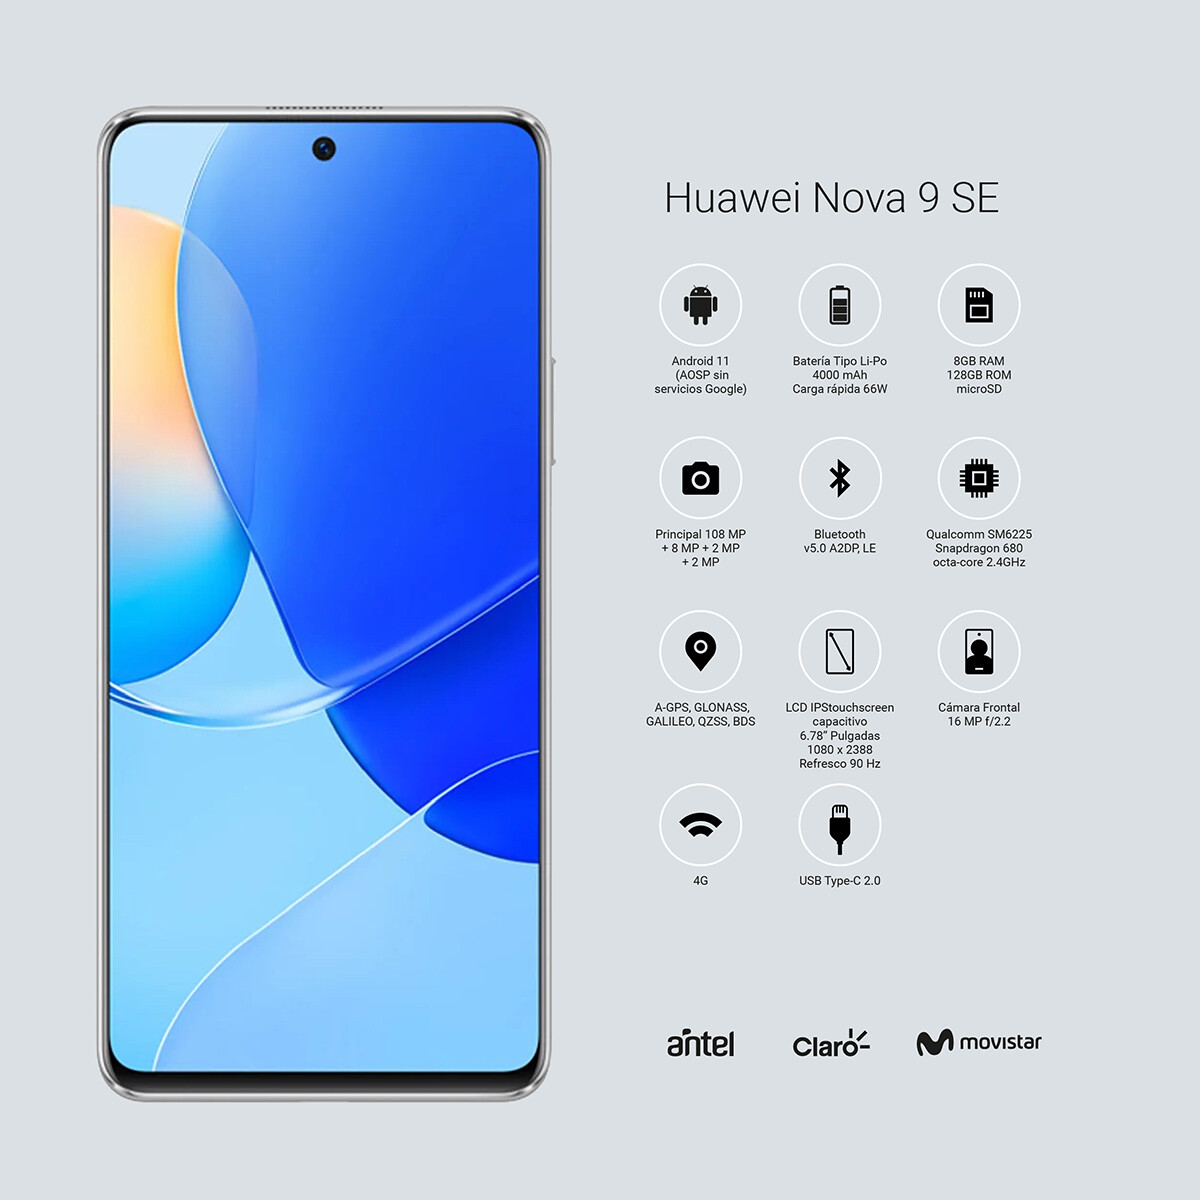 Huawei nova 9se 128gb rom/6gb ram dual sim jln-lx3 Blanco